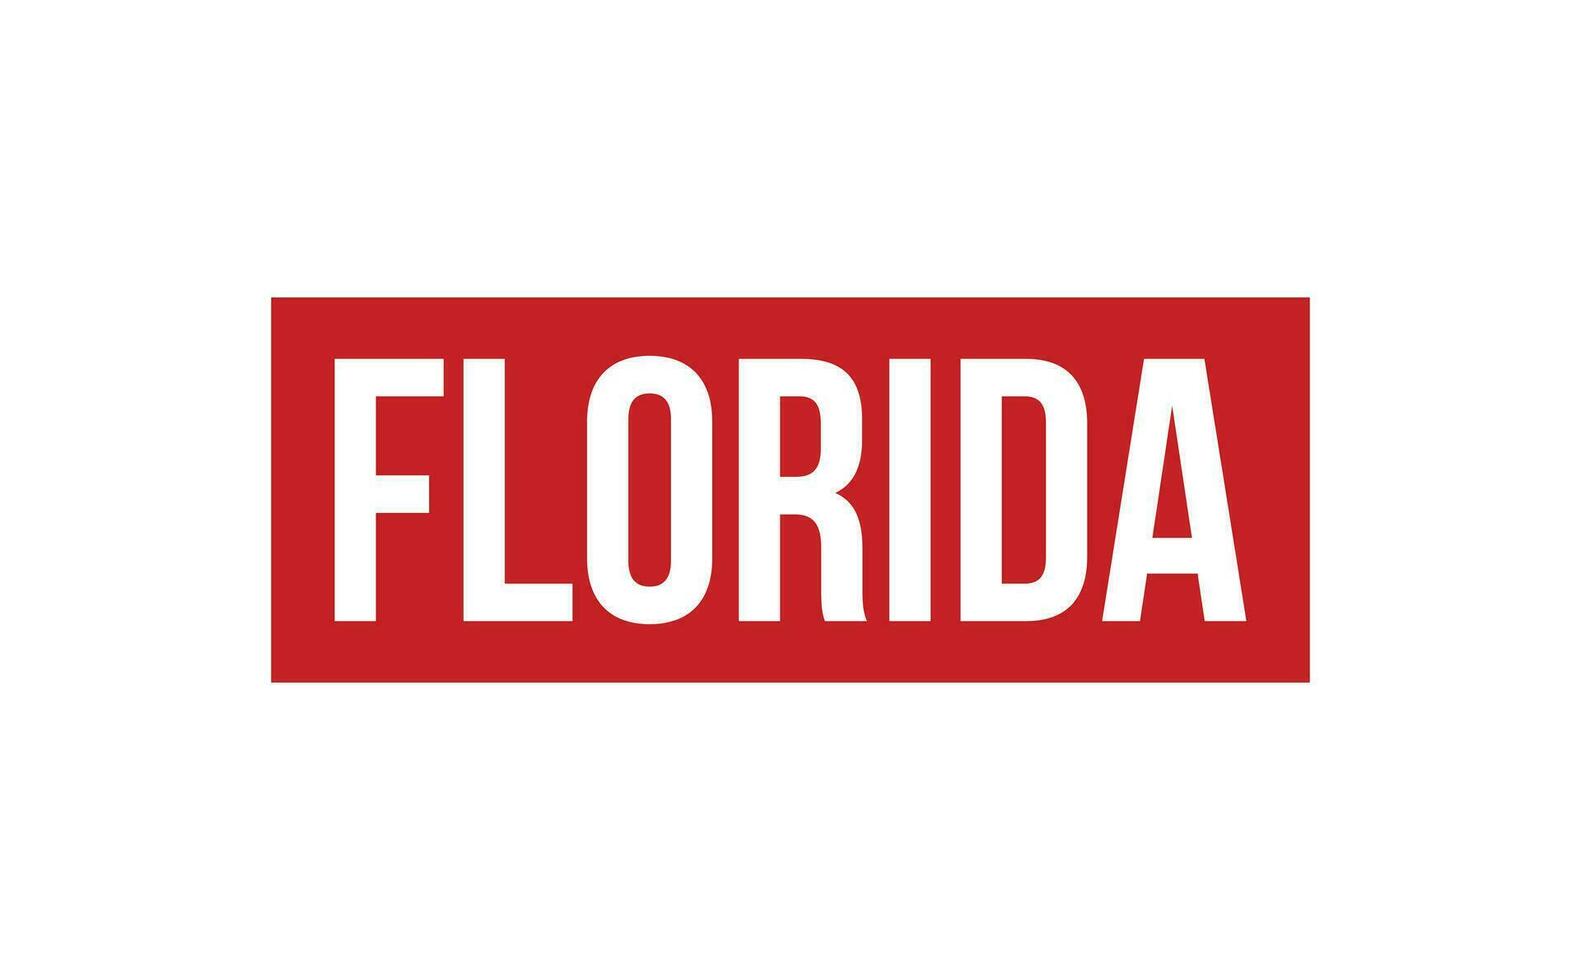 Florida caucho sello sello vector